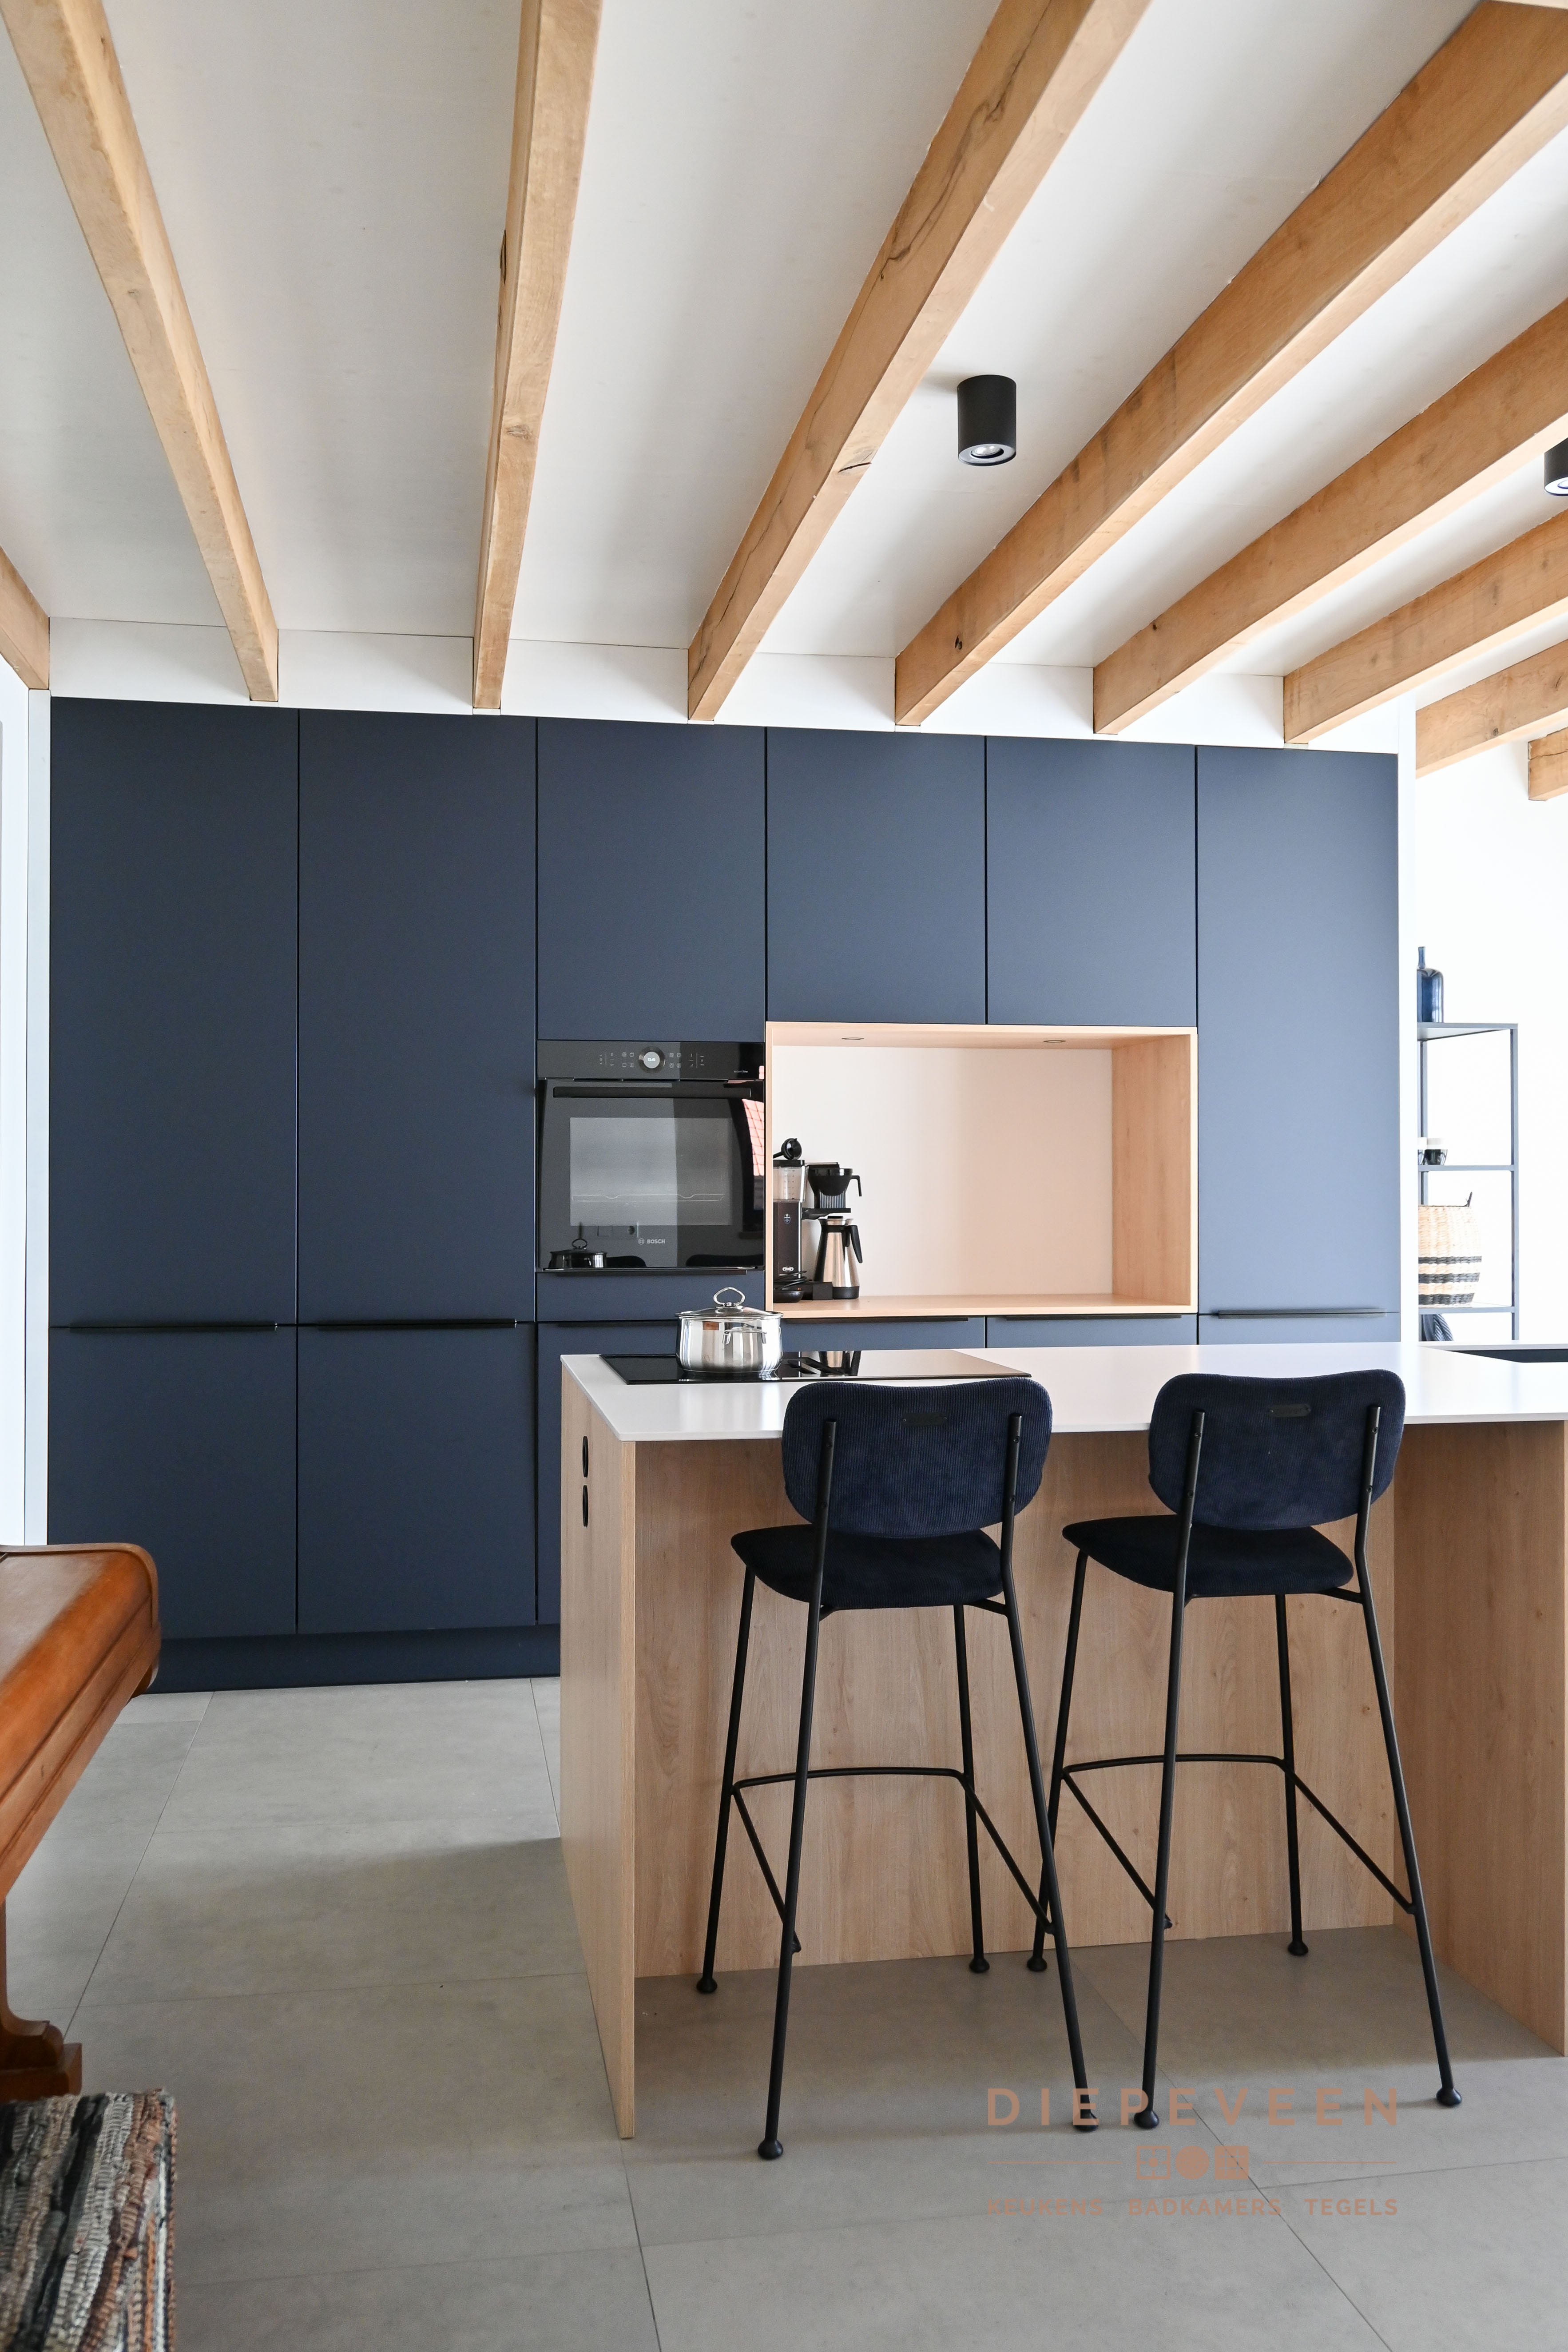 Foto : Rustige moderne keuken